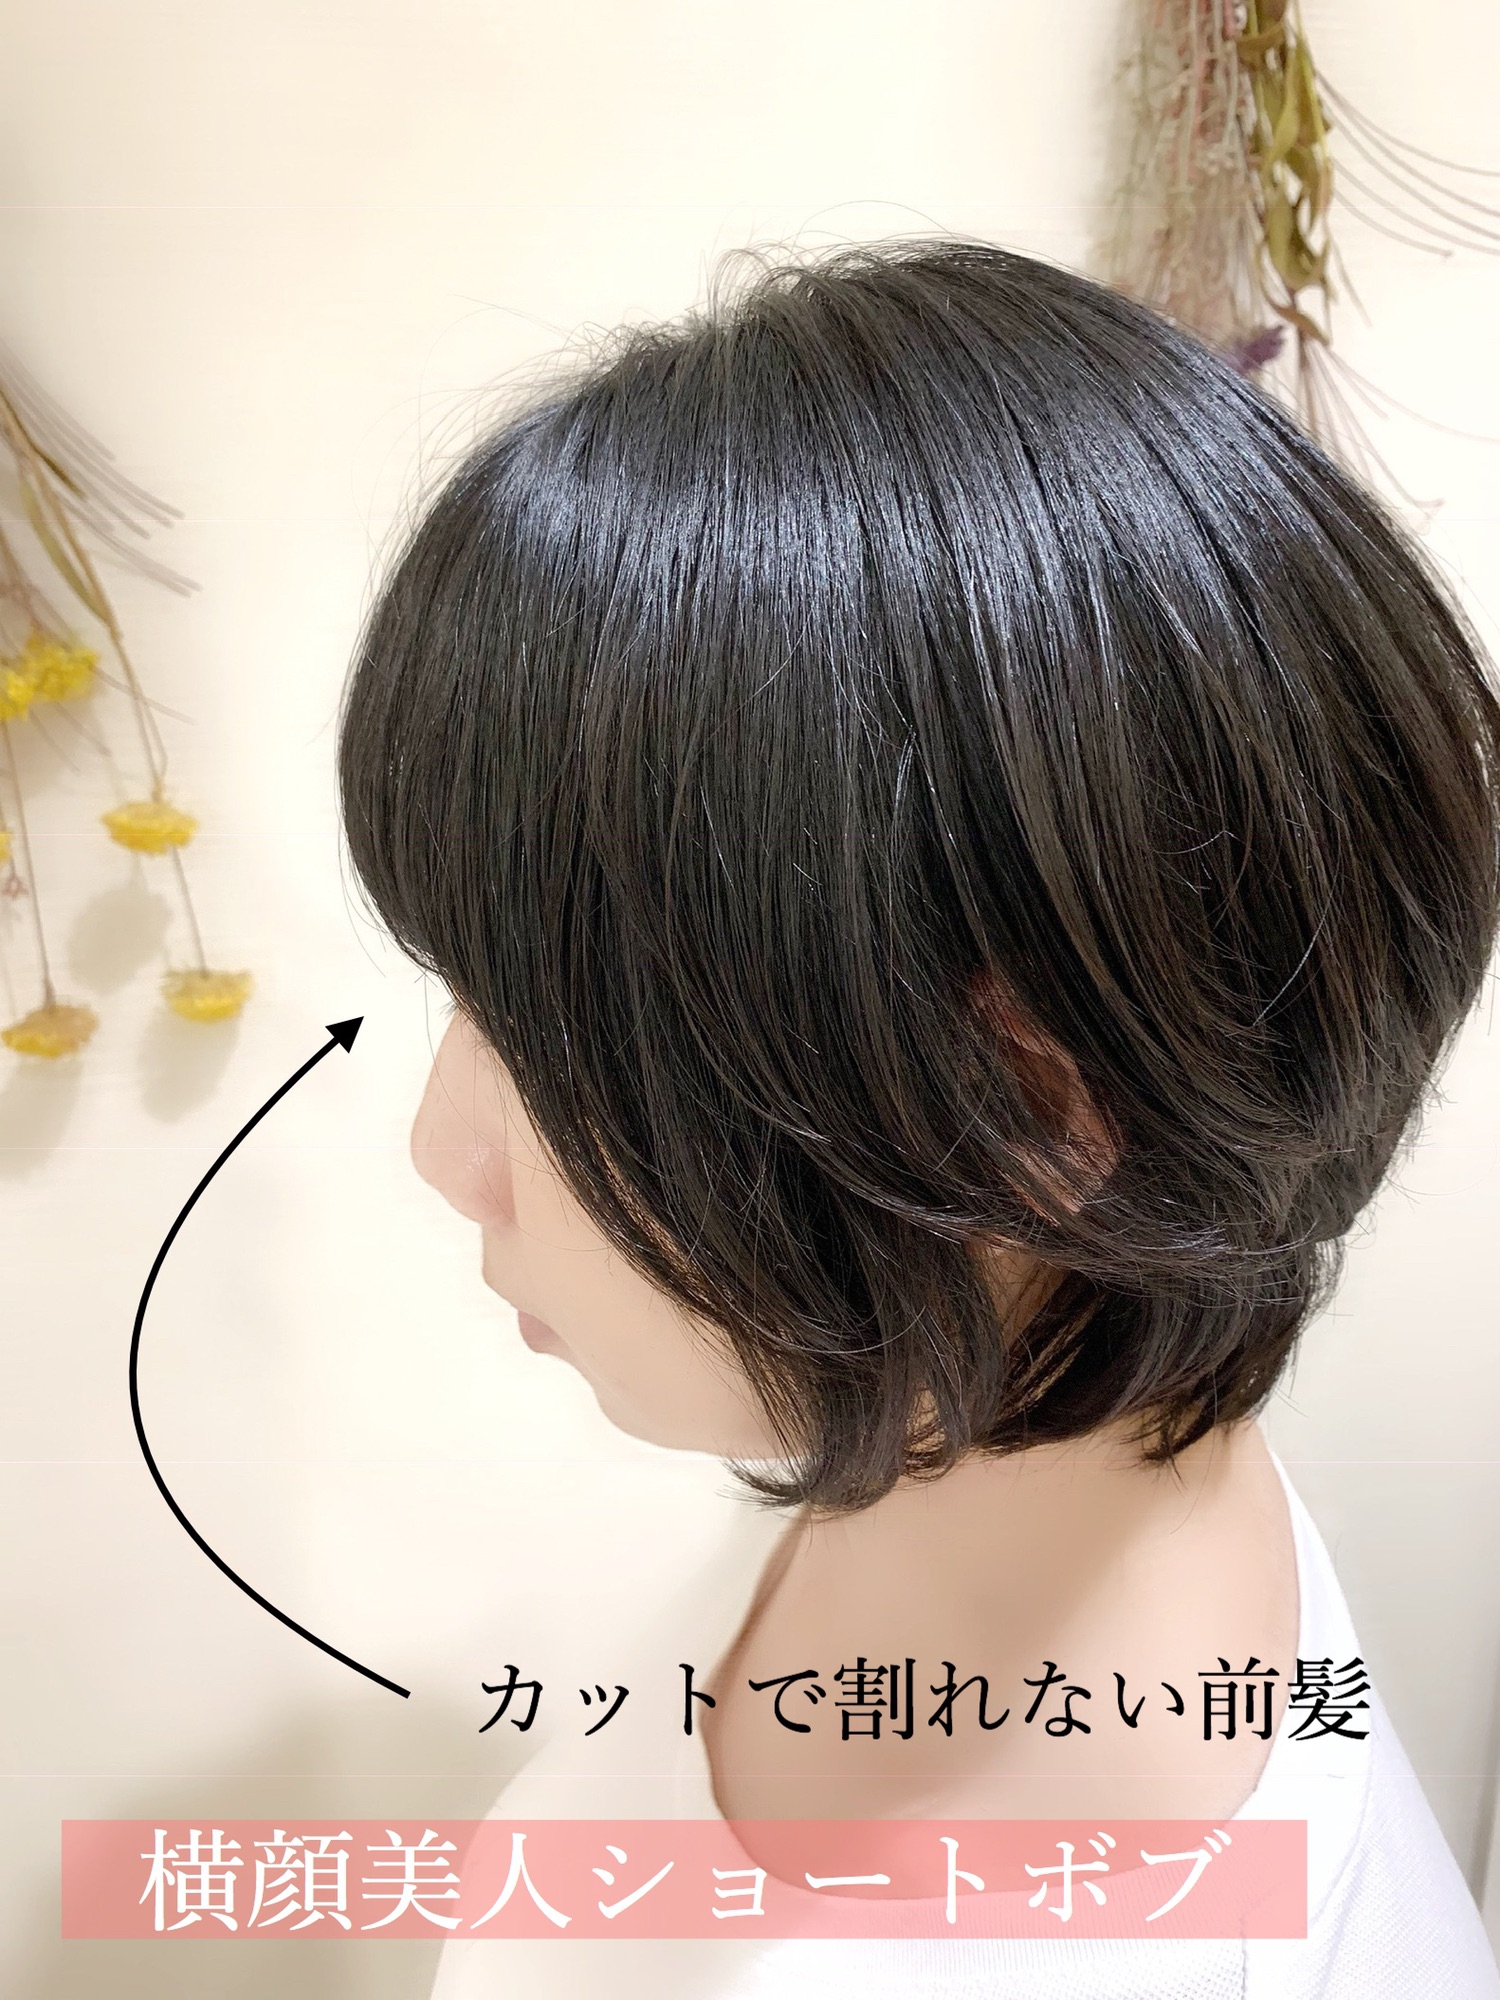 前髪の割れないカット 横顔美人ショート Ash大泉学園店 ブログ